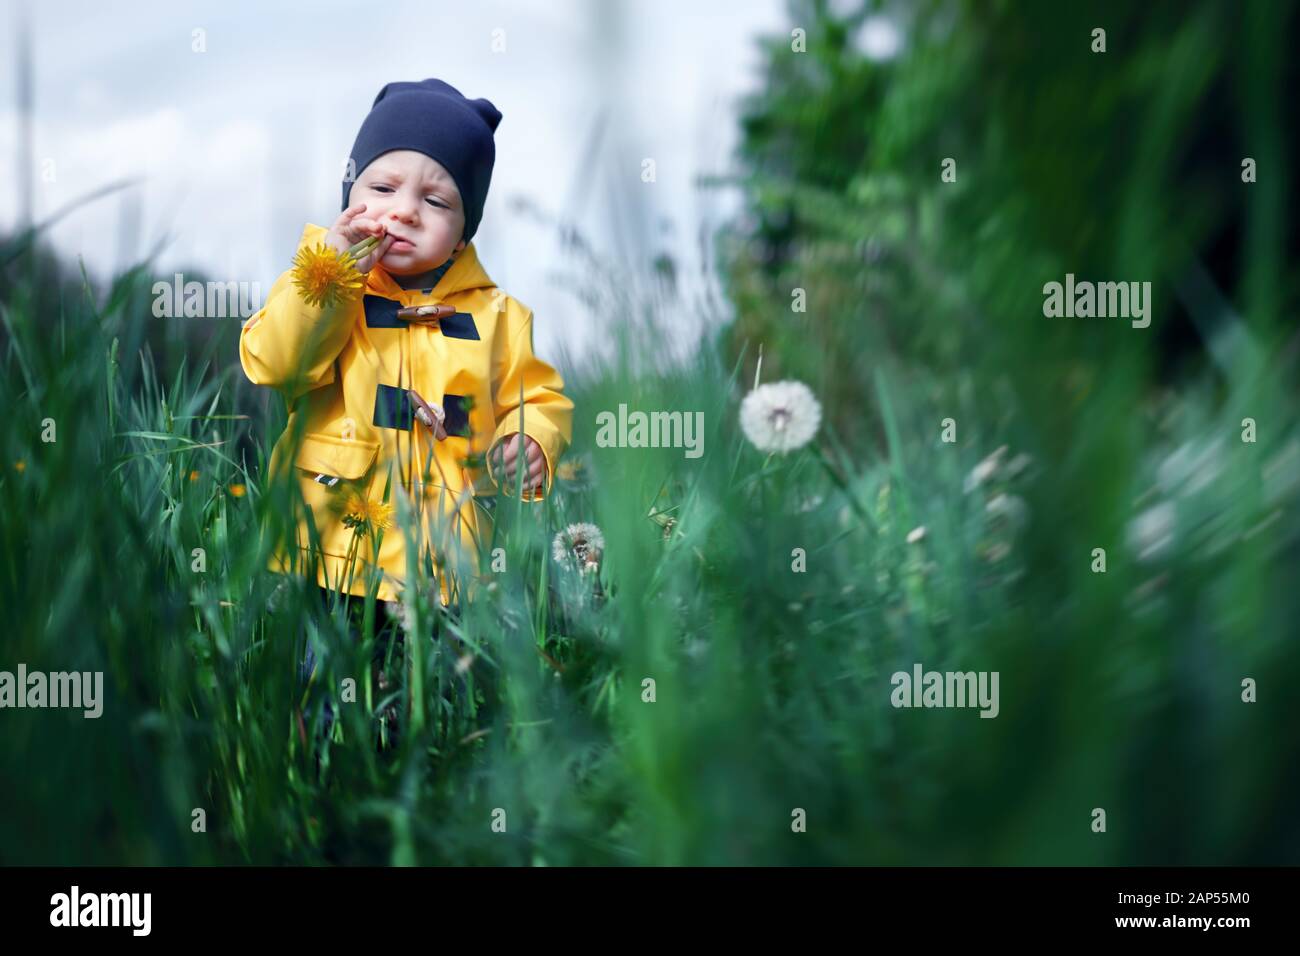 Kind in der gelben Jacke spielen in Gras und Löwenzahn Stockfoto